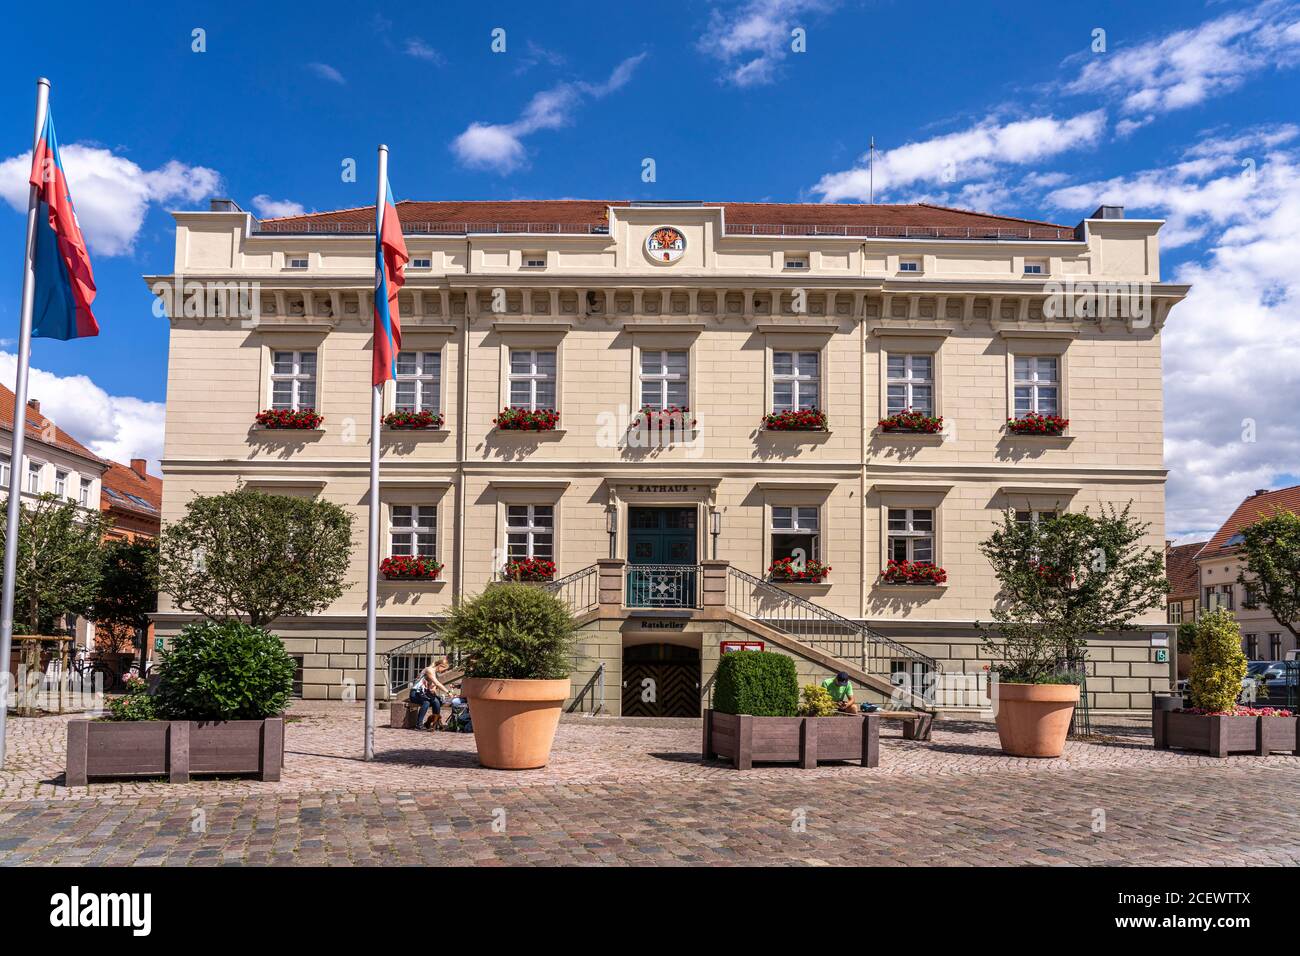 Das Rathaus in Havelberg, Sachsen-Anhalt, Deutschland |  Havelberg City Hall, Saxony-Anhalt, Germany Stock Photo